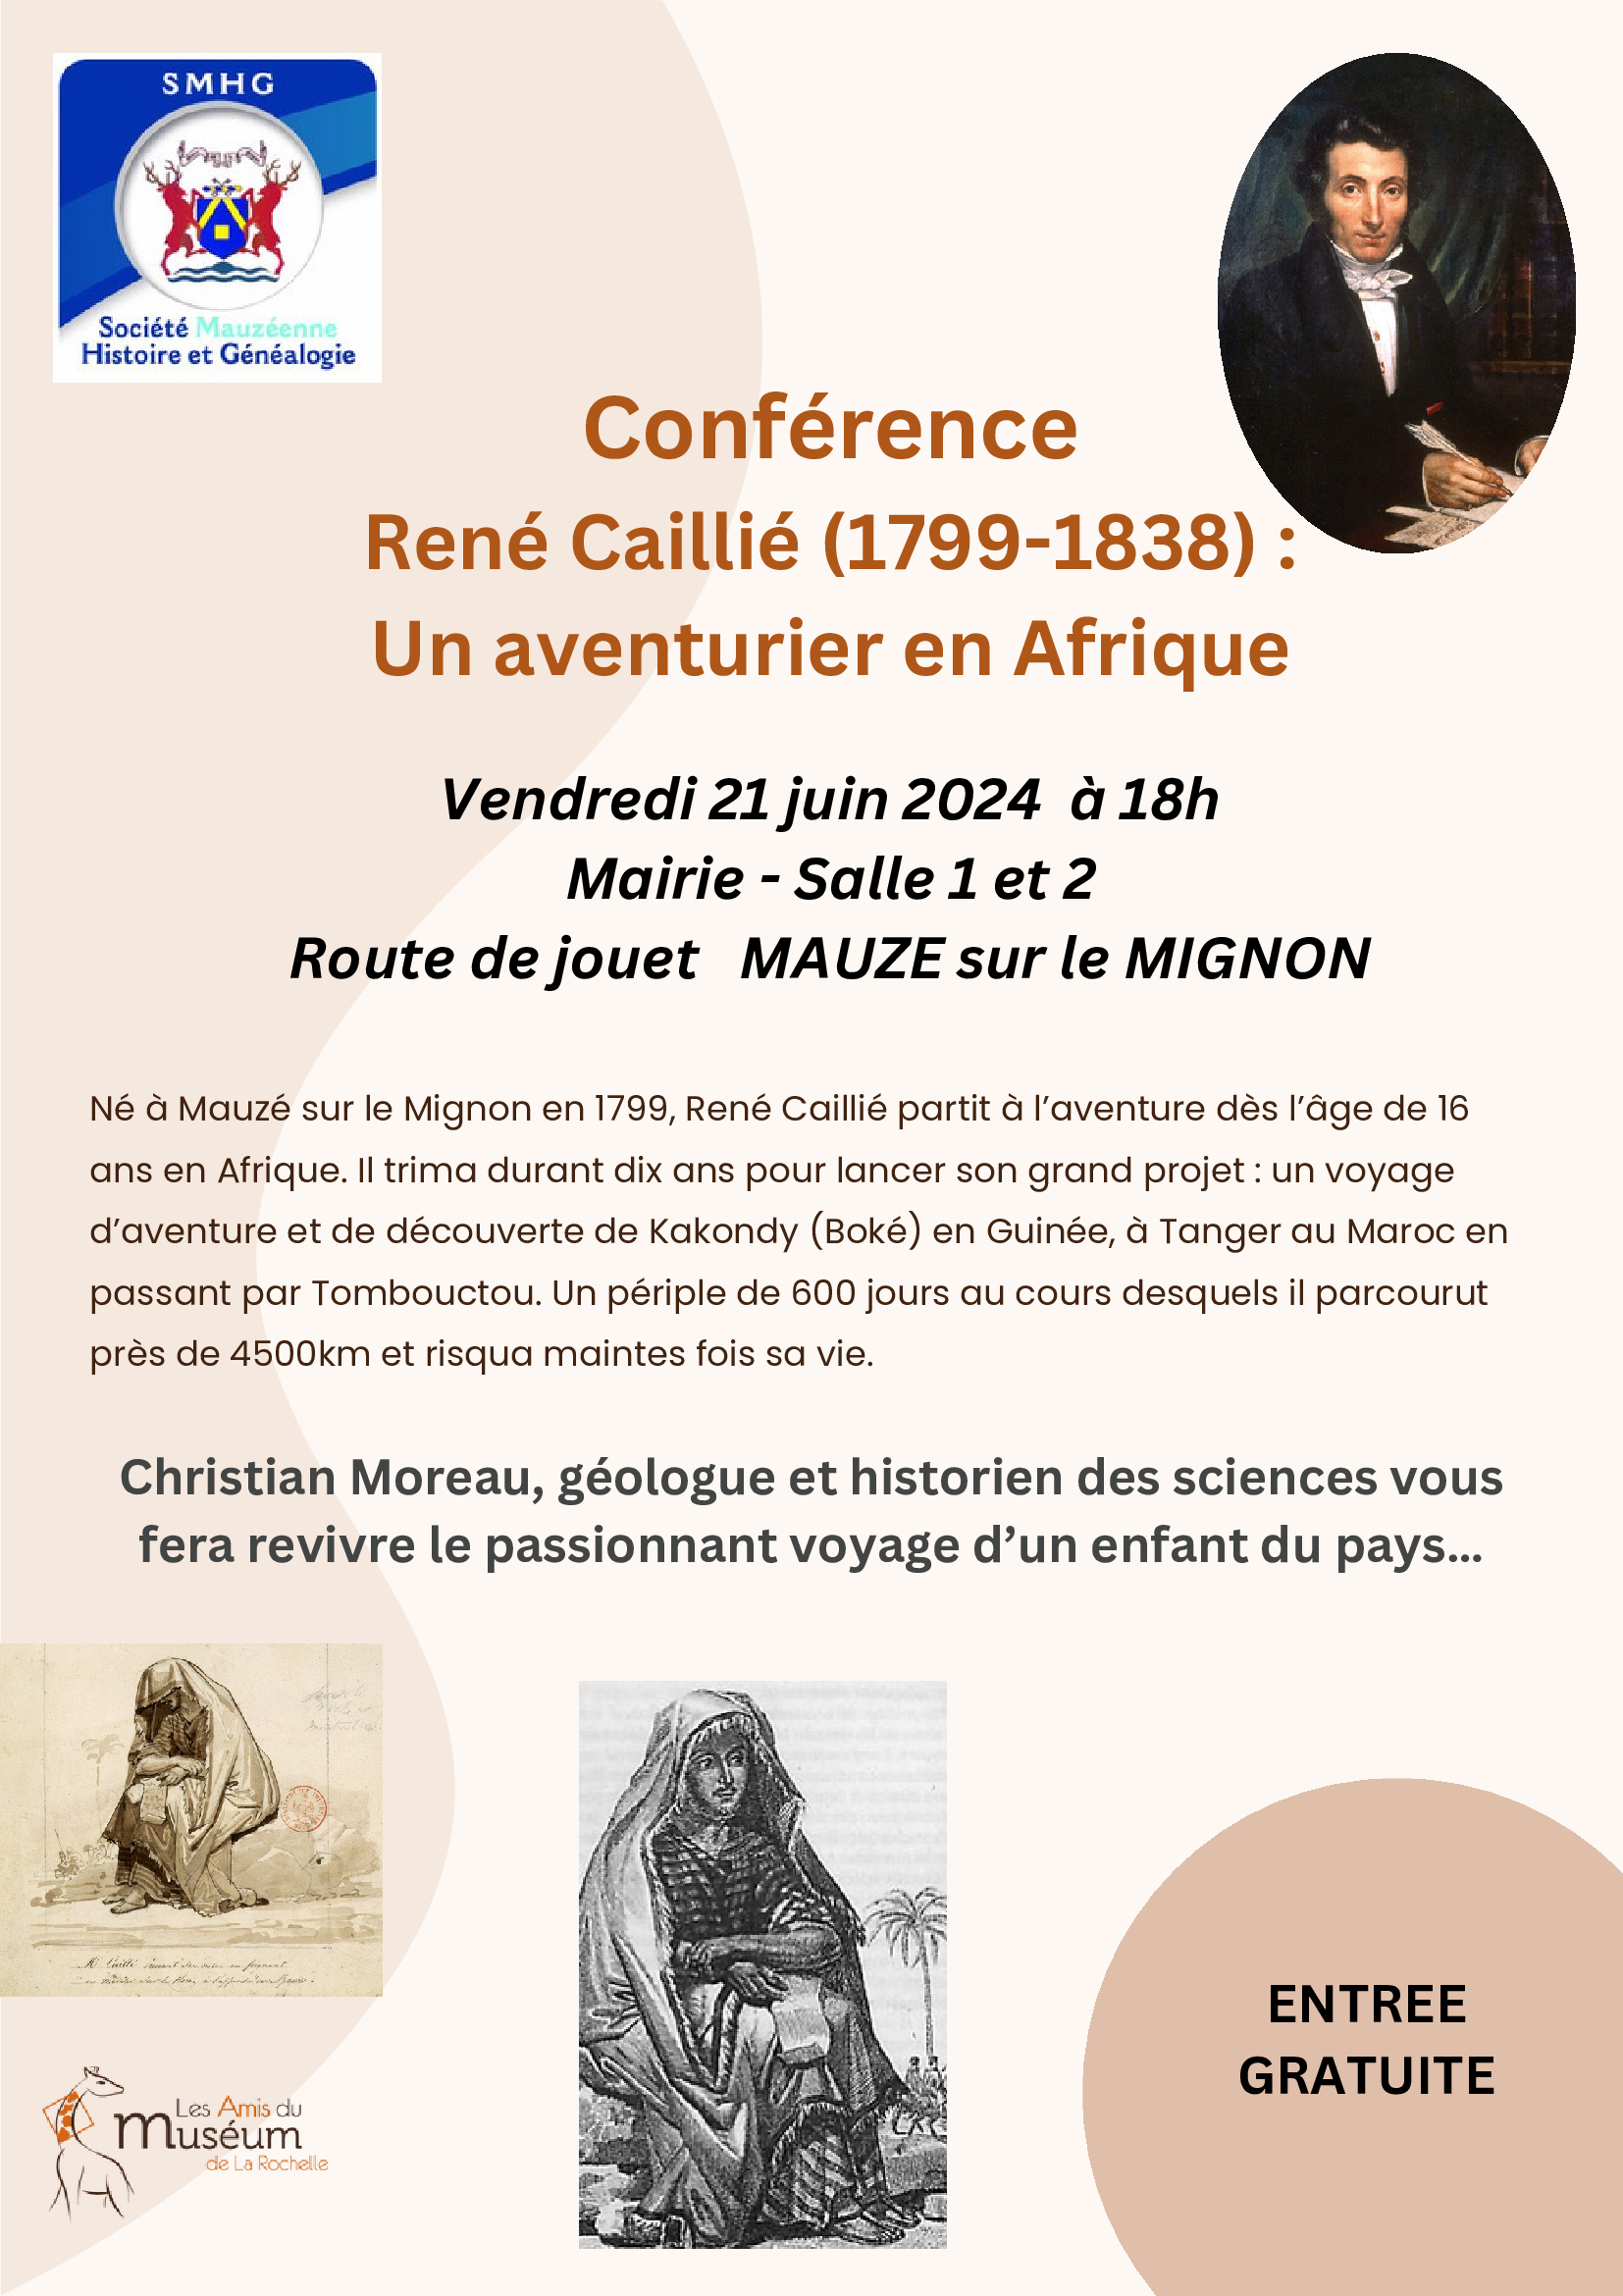 Conférence : René Caillié en affrique